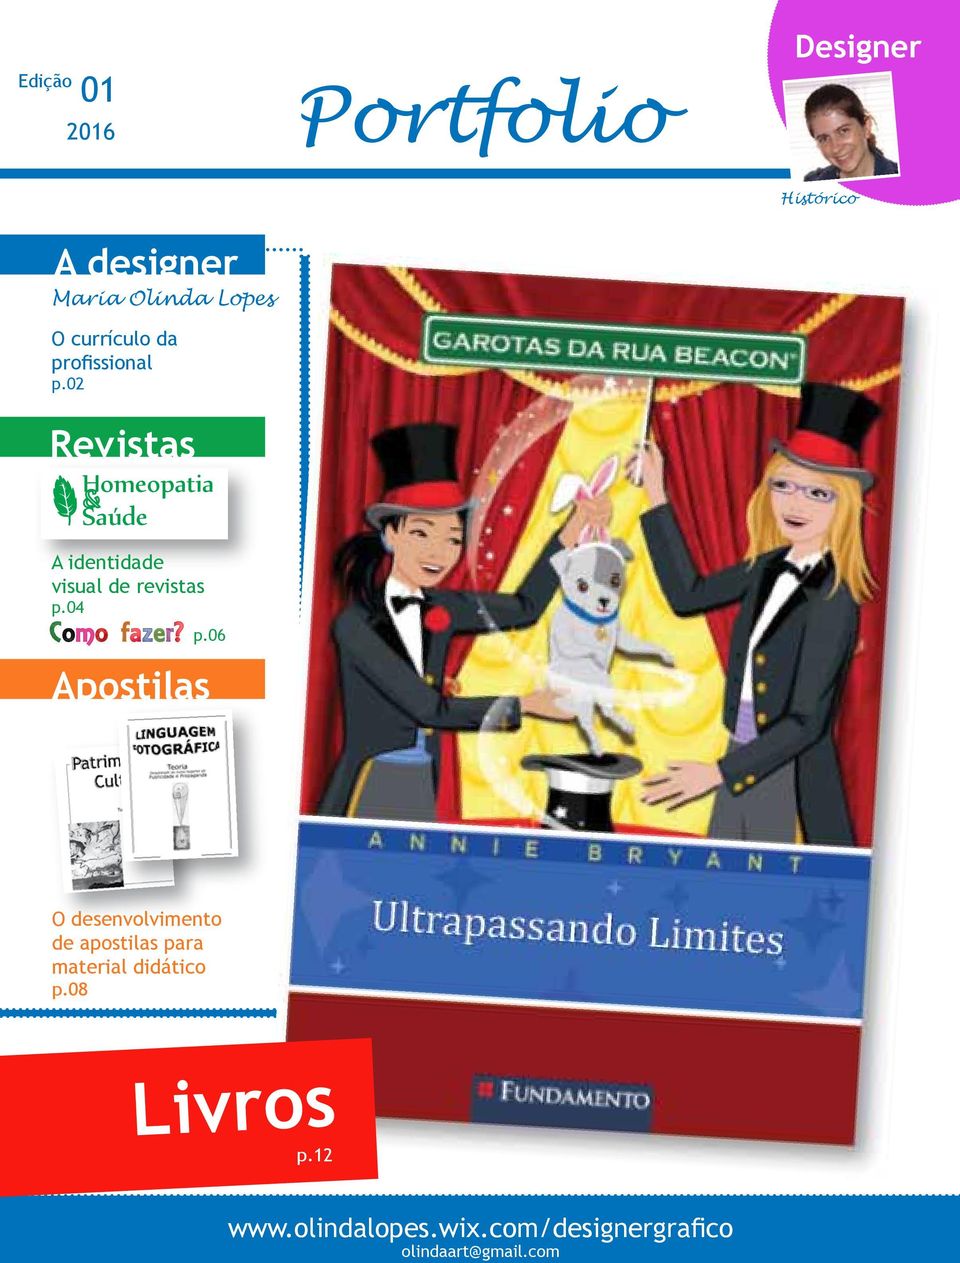 02 Revistas Homeopatia Saúde A identidade visual de revistas p.04 p.